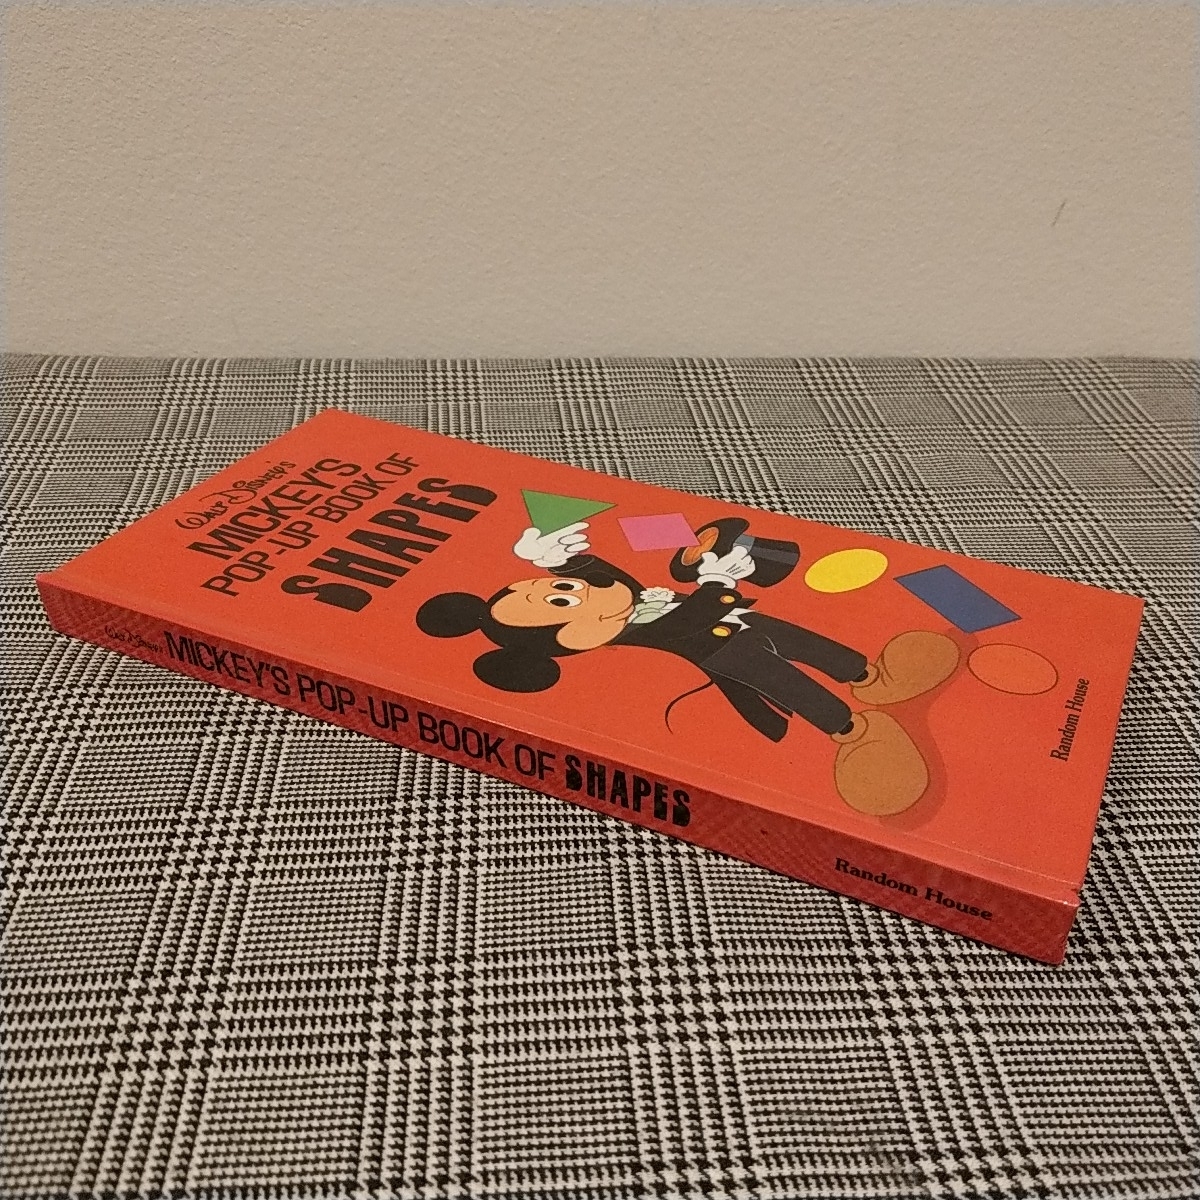  английский язык Disney книга с картинками для маленьких MICKEY\'S POPUP BOOK OF SHAPES pop up рука .. VERSION 1985 год выпуск 